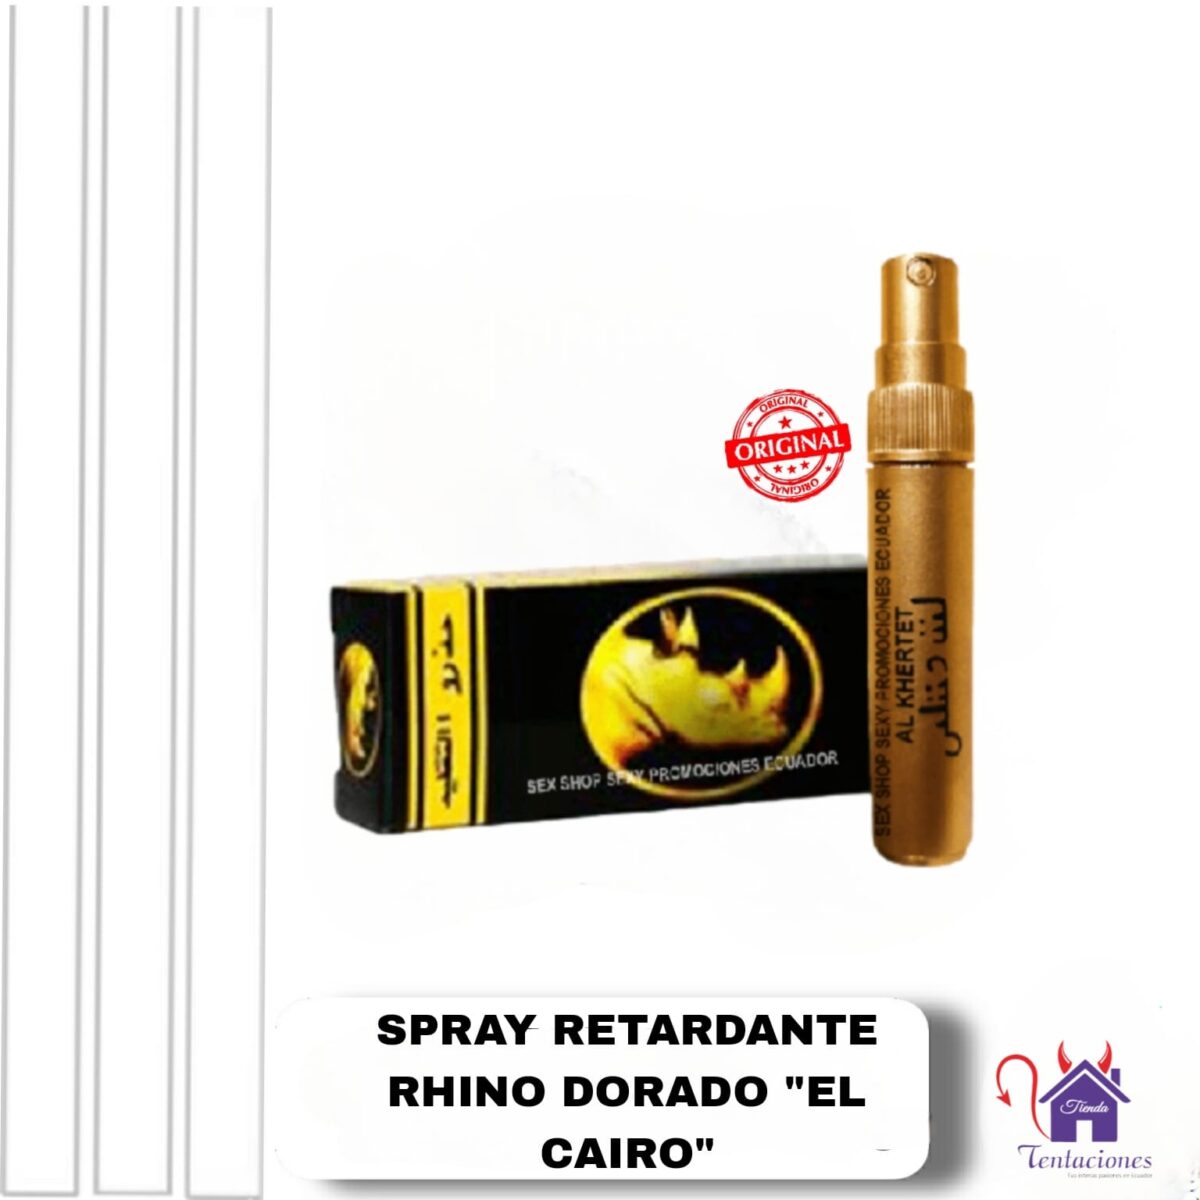 Rhino dorado-Tienda Tentaciones-Sex Shop Ecuador